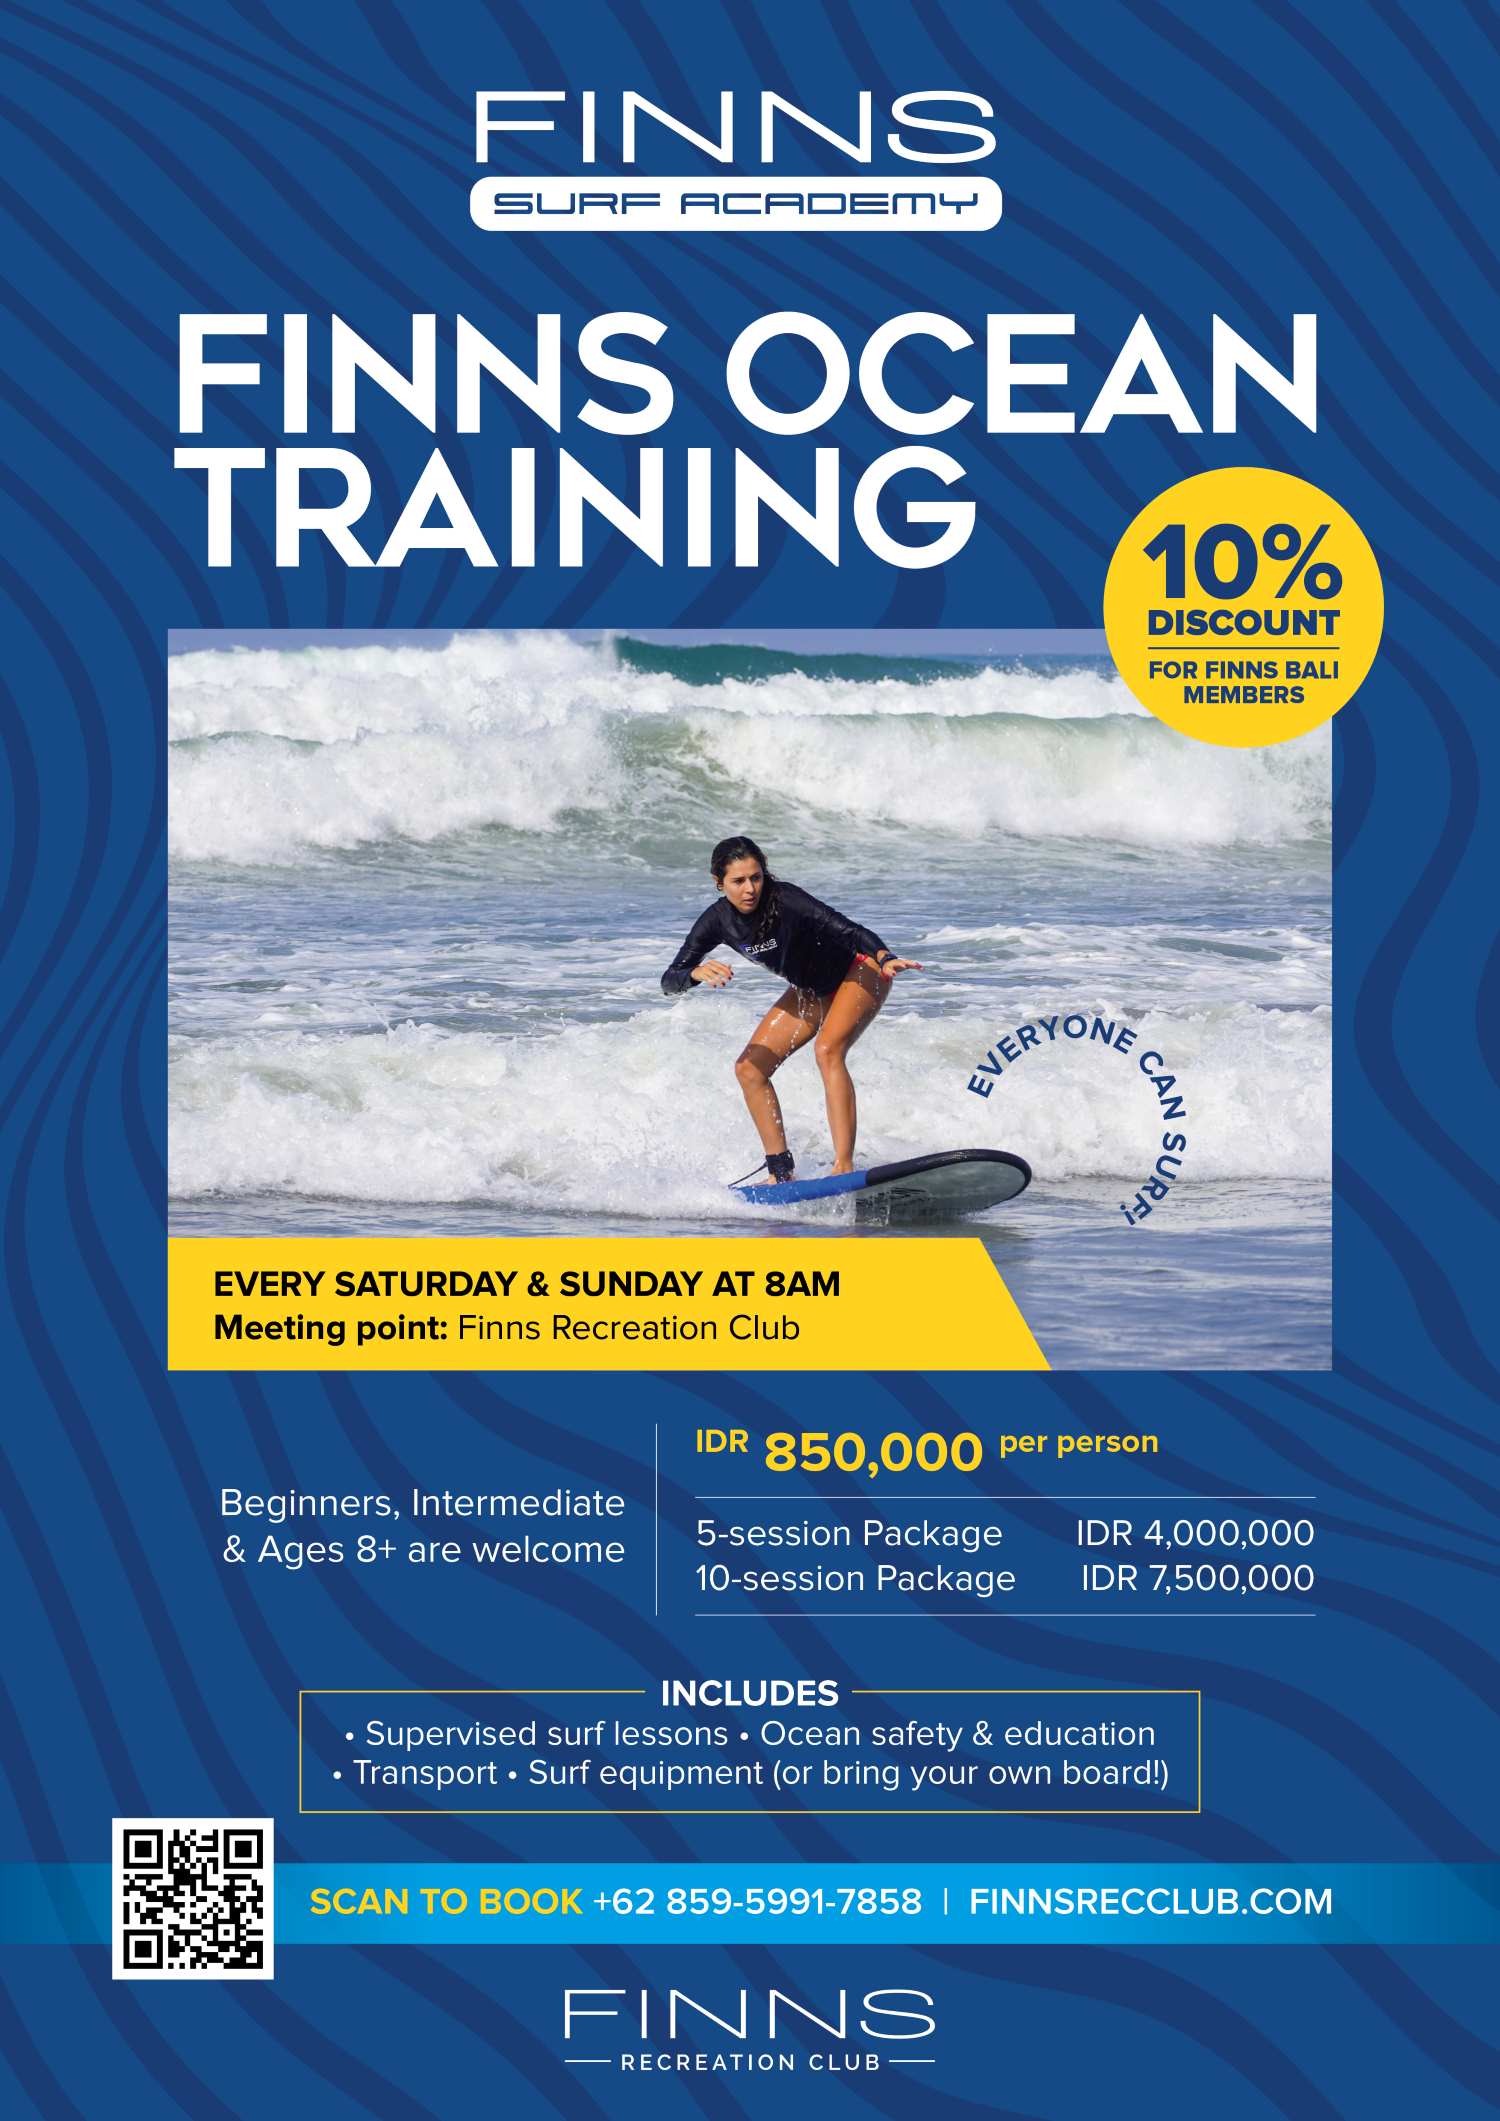 FINNS Ocean Training